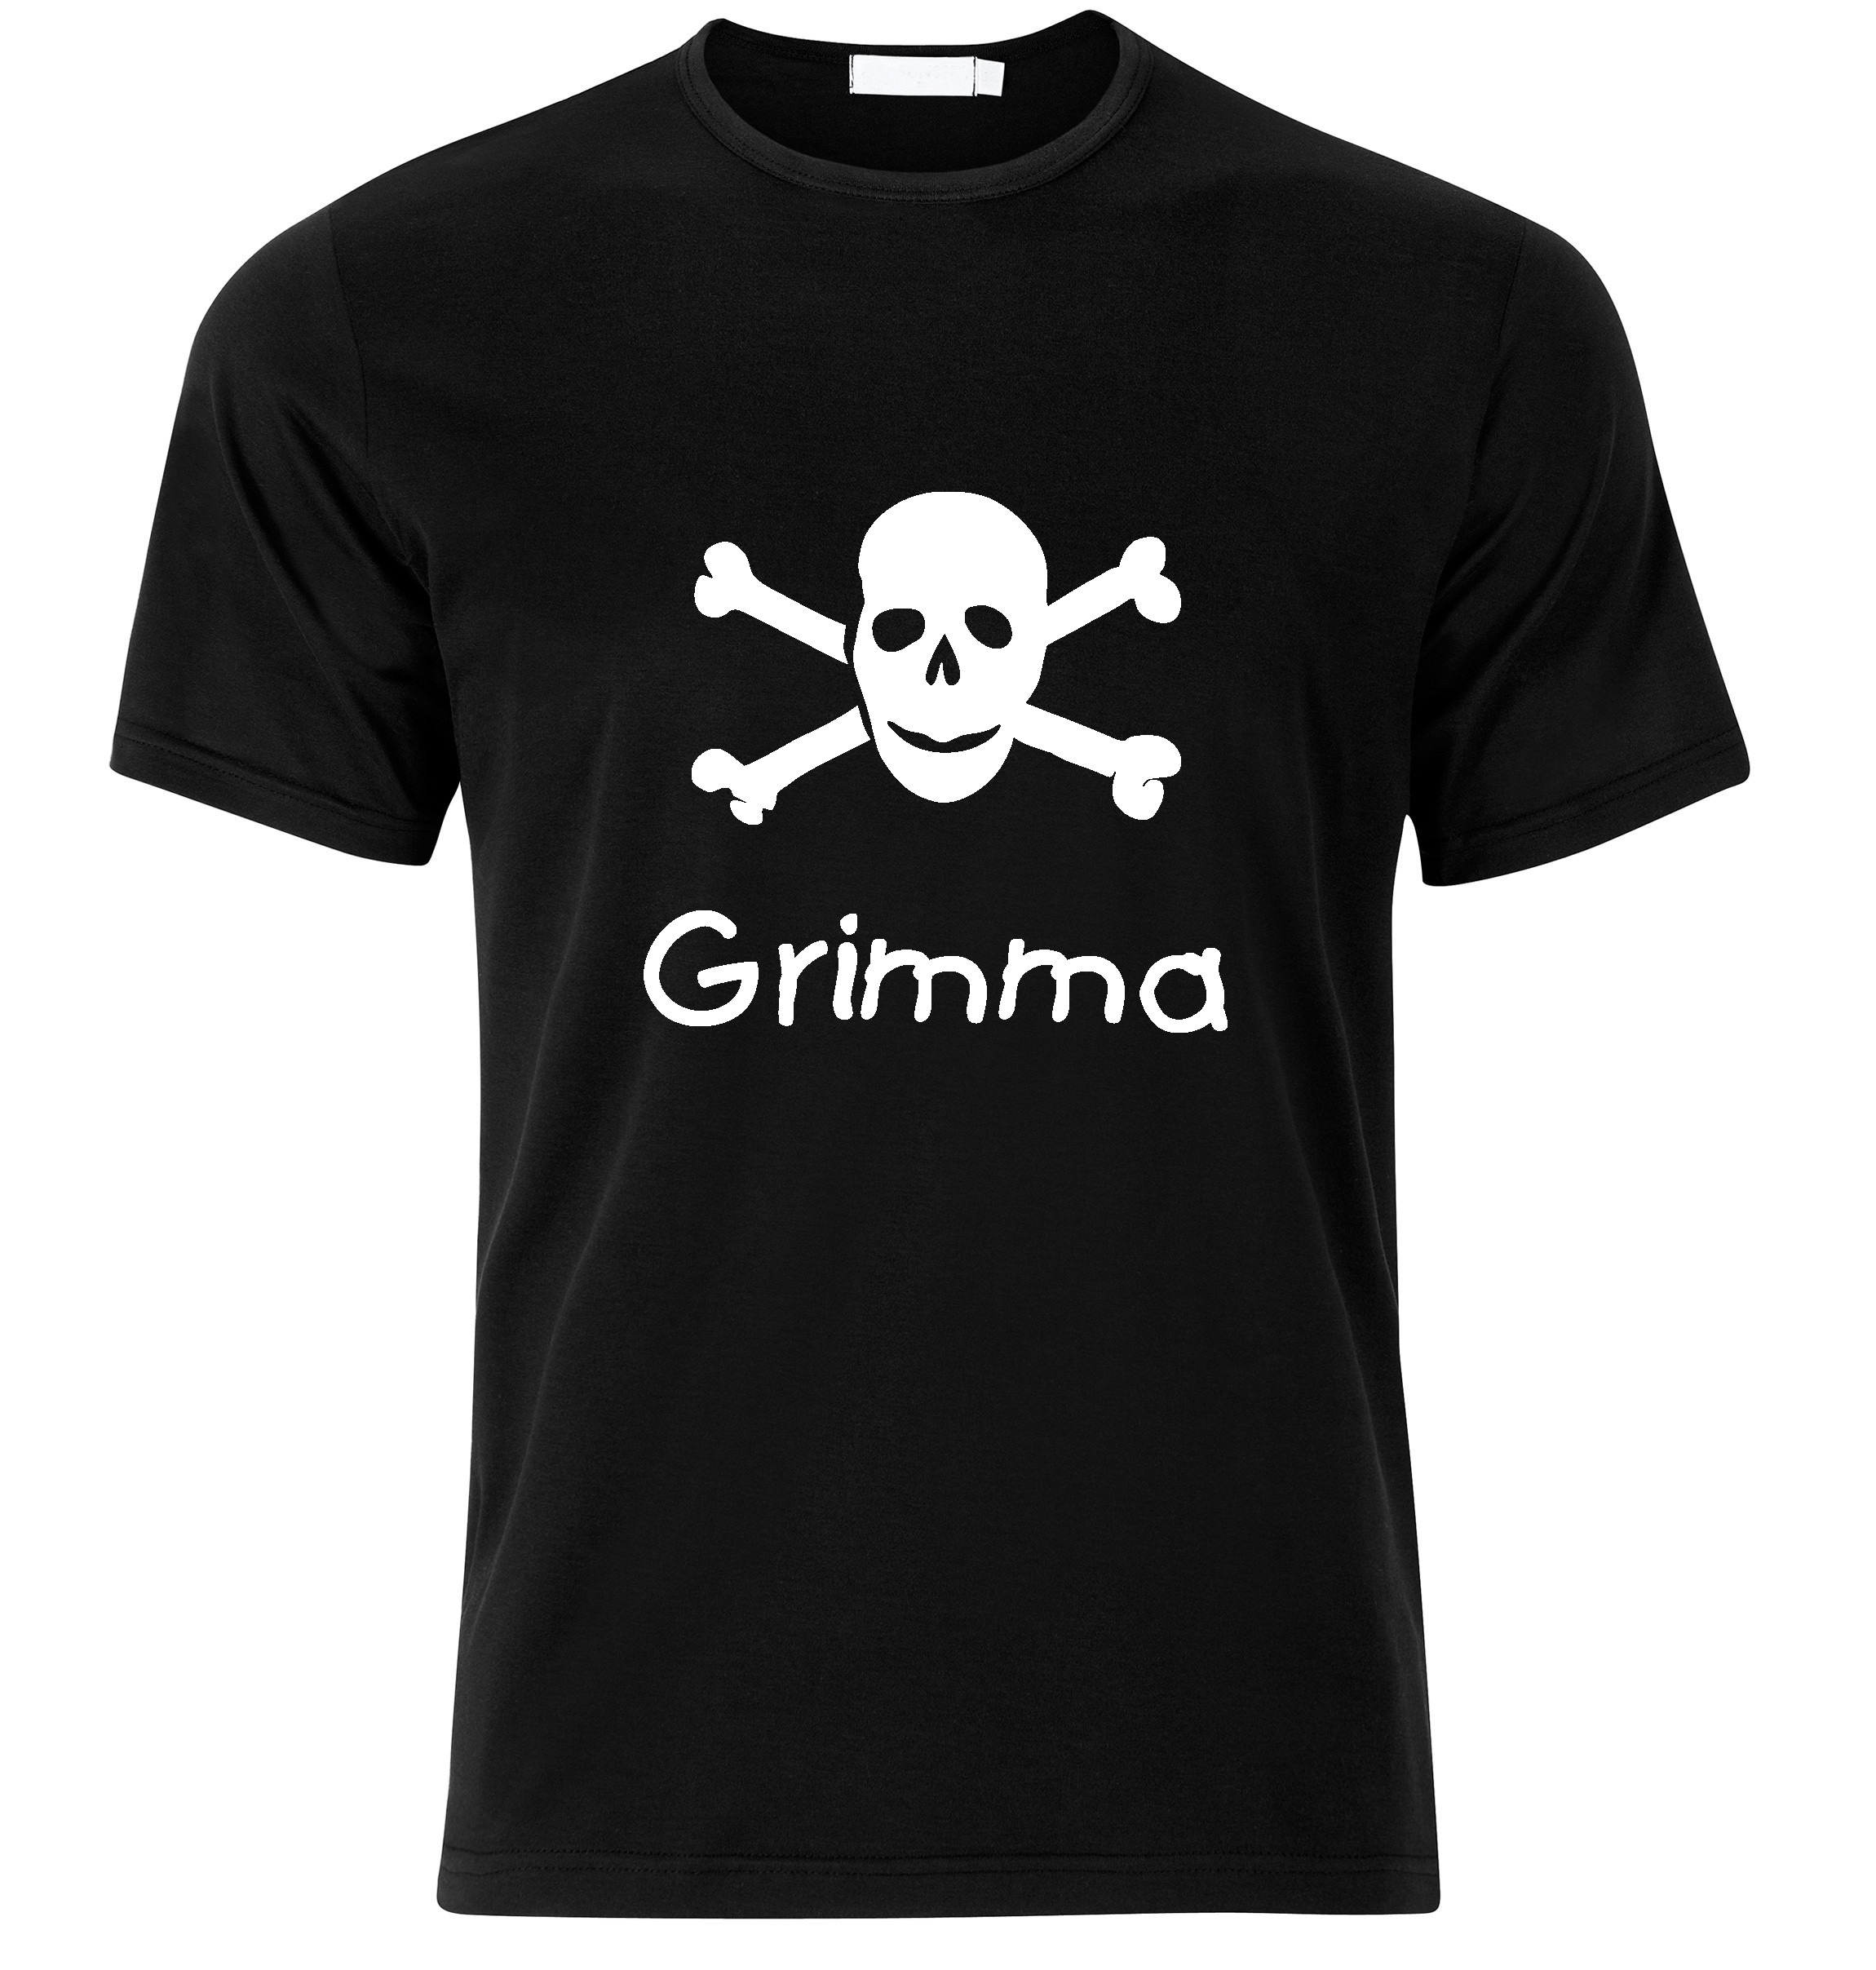 T-Shirt Grimma Jolly Roger, Totenkopf